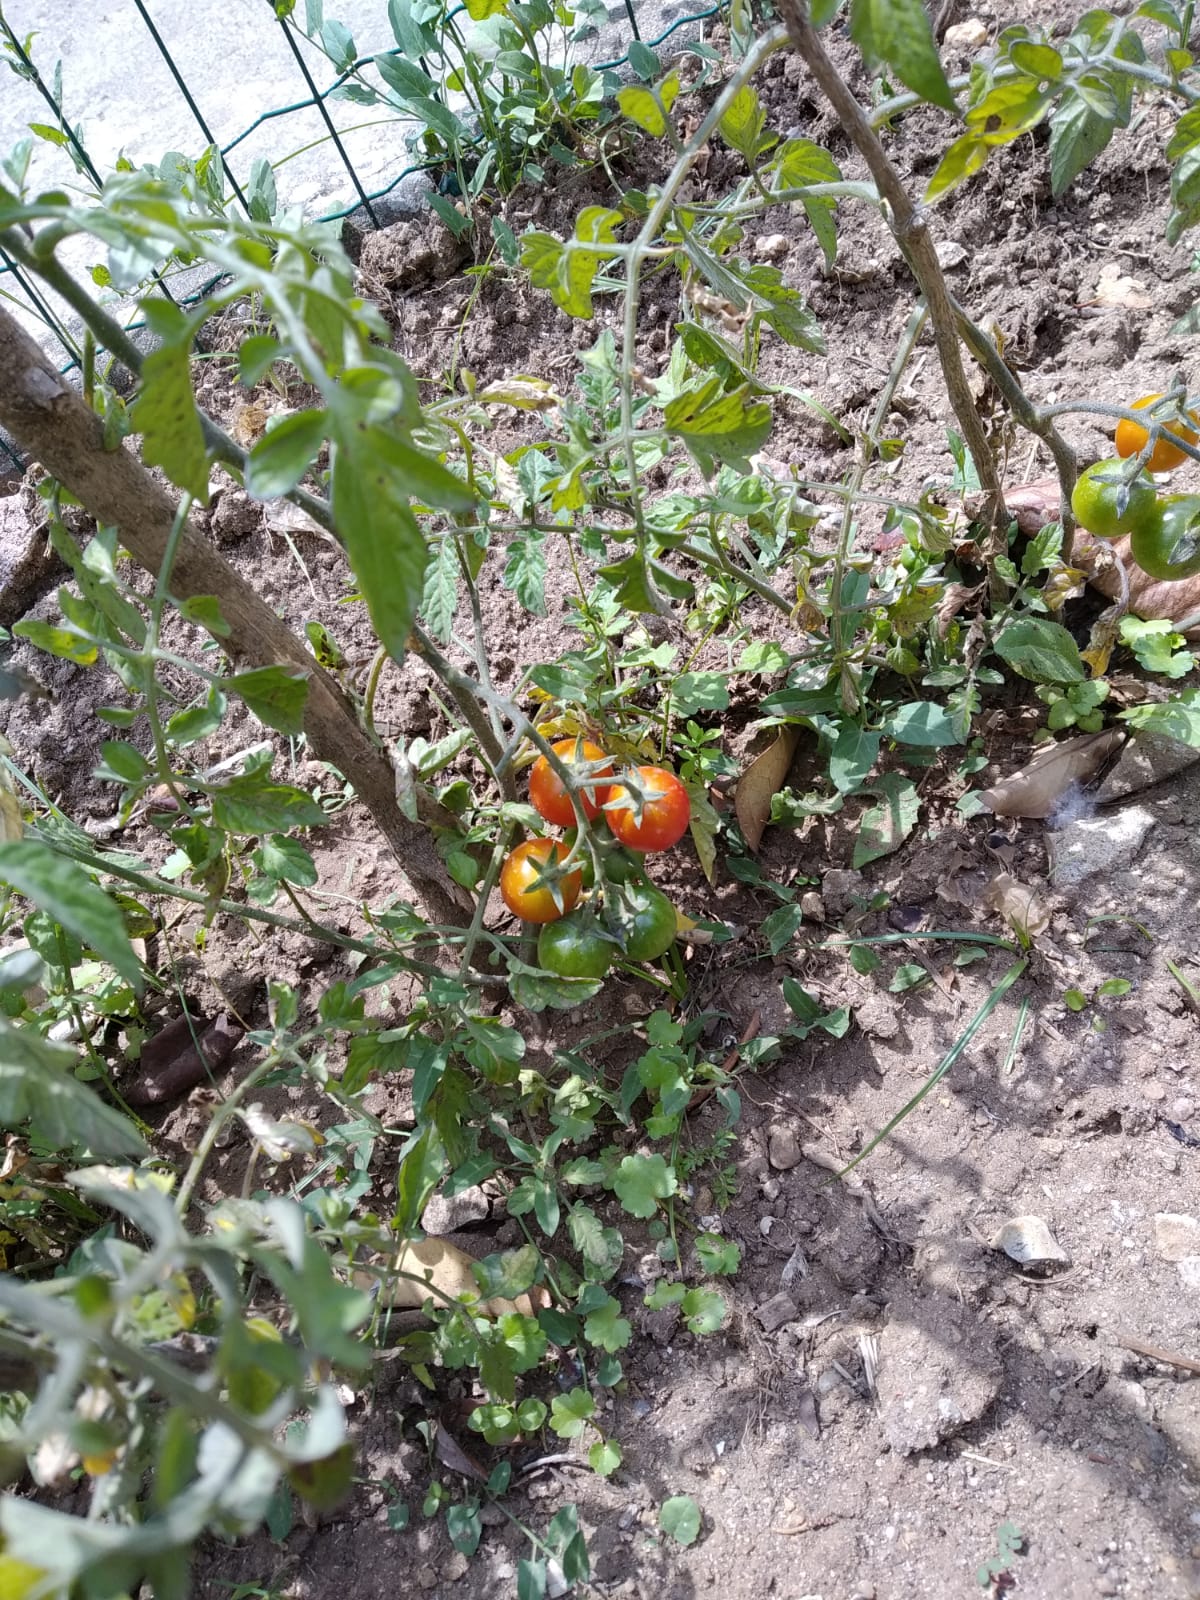 Tomates- Os tomates depois de maduros formam apanhados, lavados, divididos e comidos pelos alunos encarregues de tratar da horta.